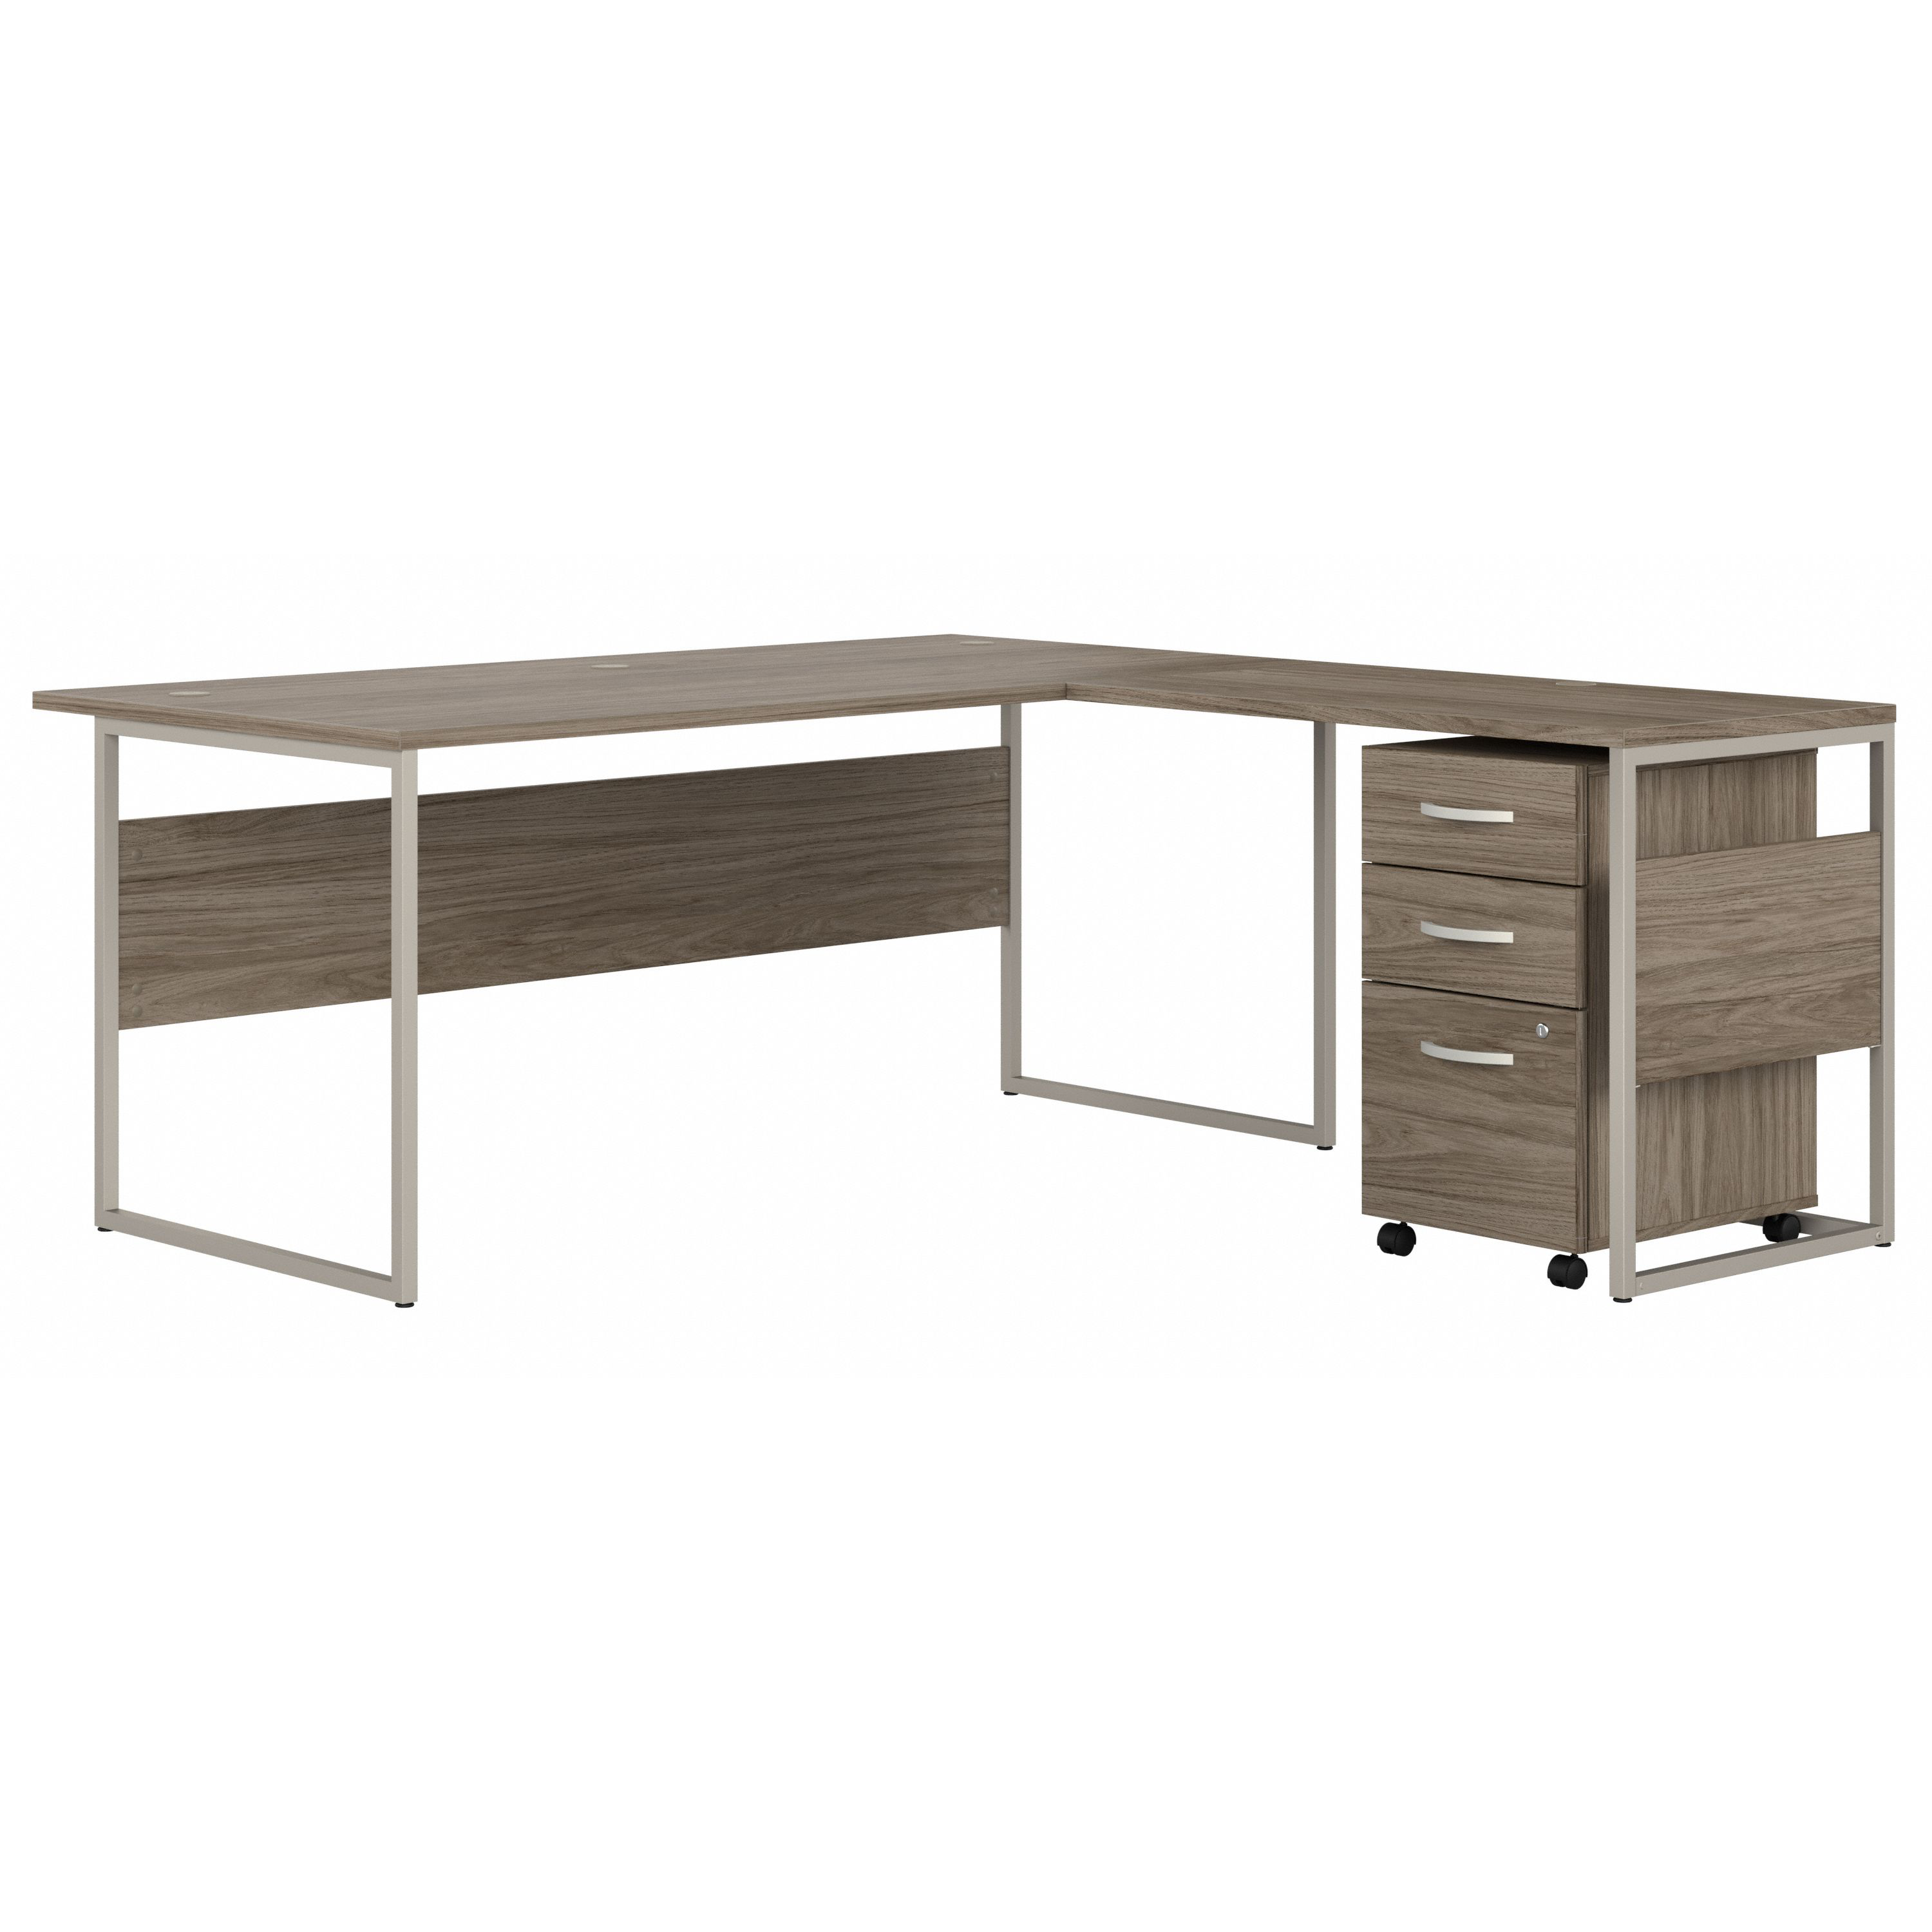 Shop Bush Business Furniture Hybrid 72W x 36D L Shaped Table Desk with 3 Drawer Mobile File Cabinet 02 HYB010MHSU #color_modern hickory